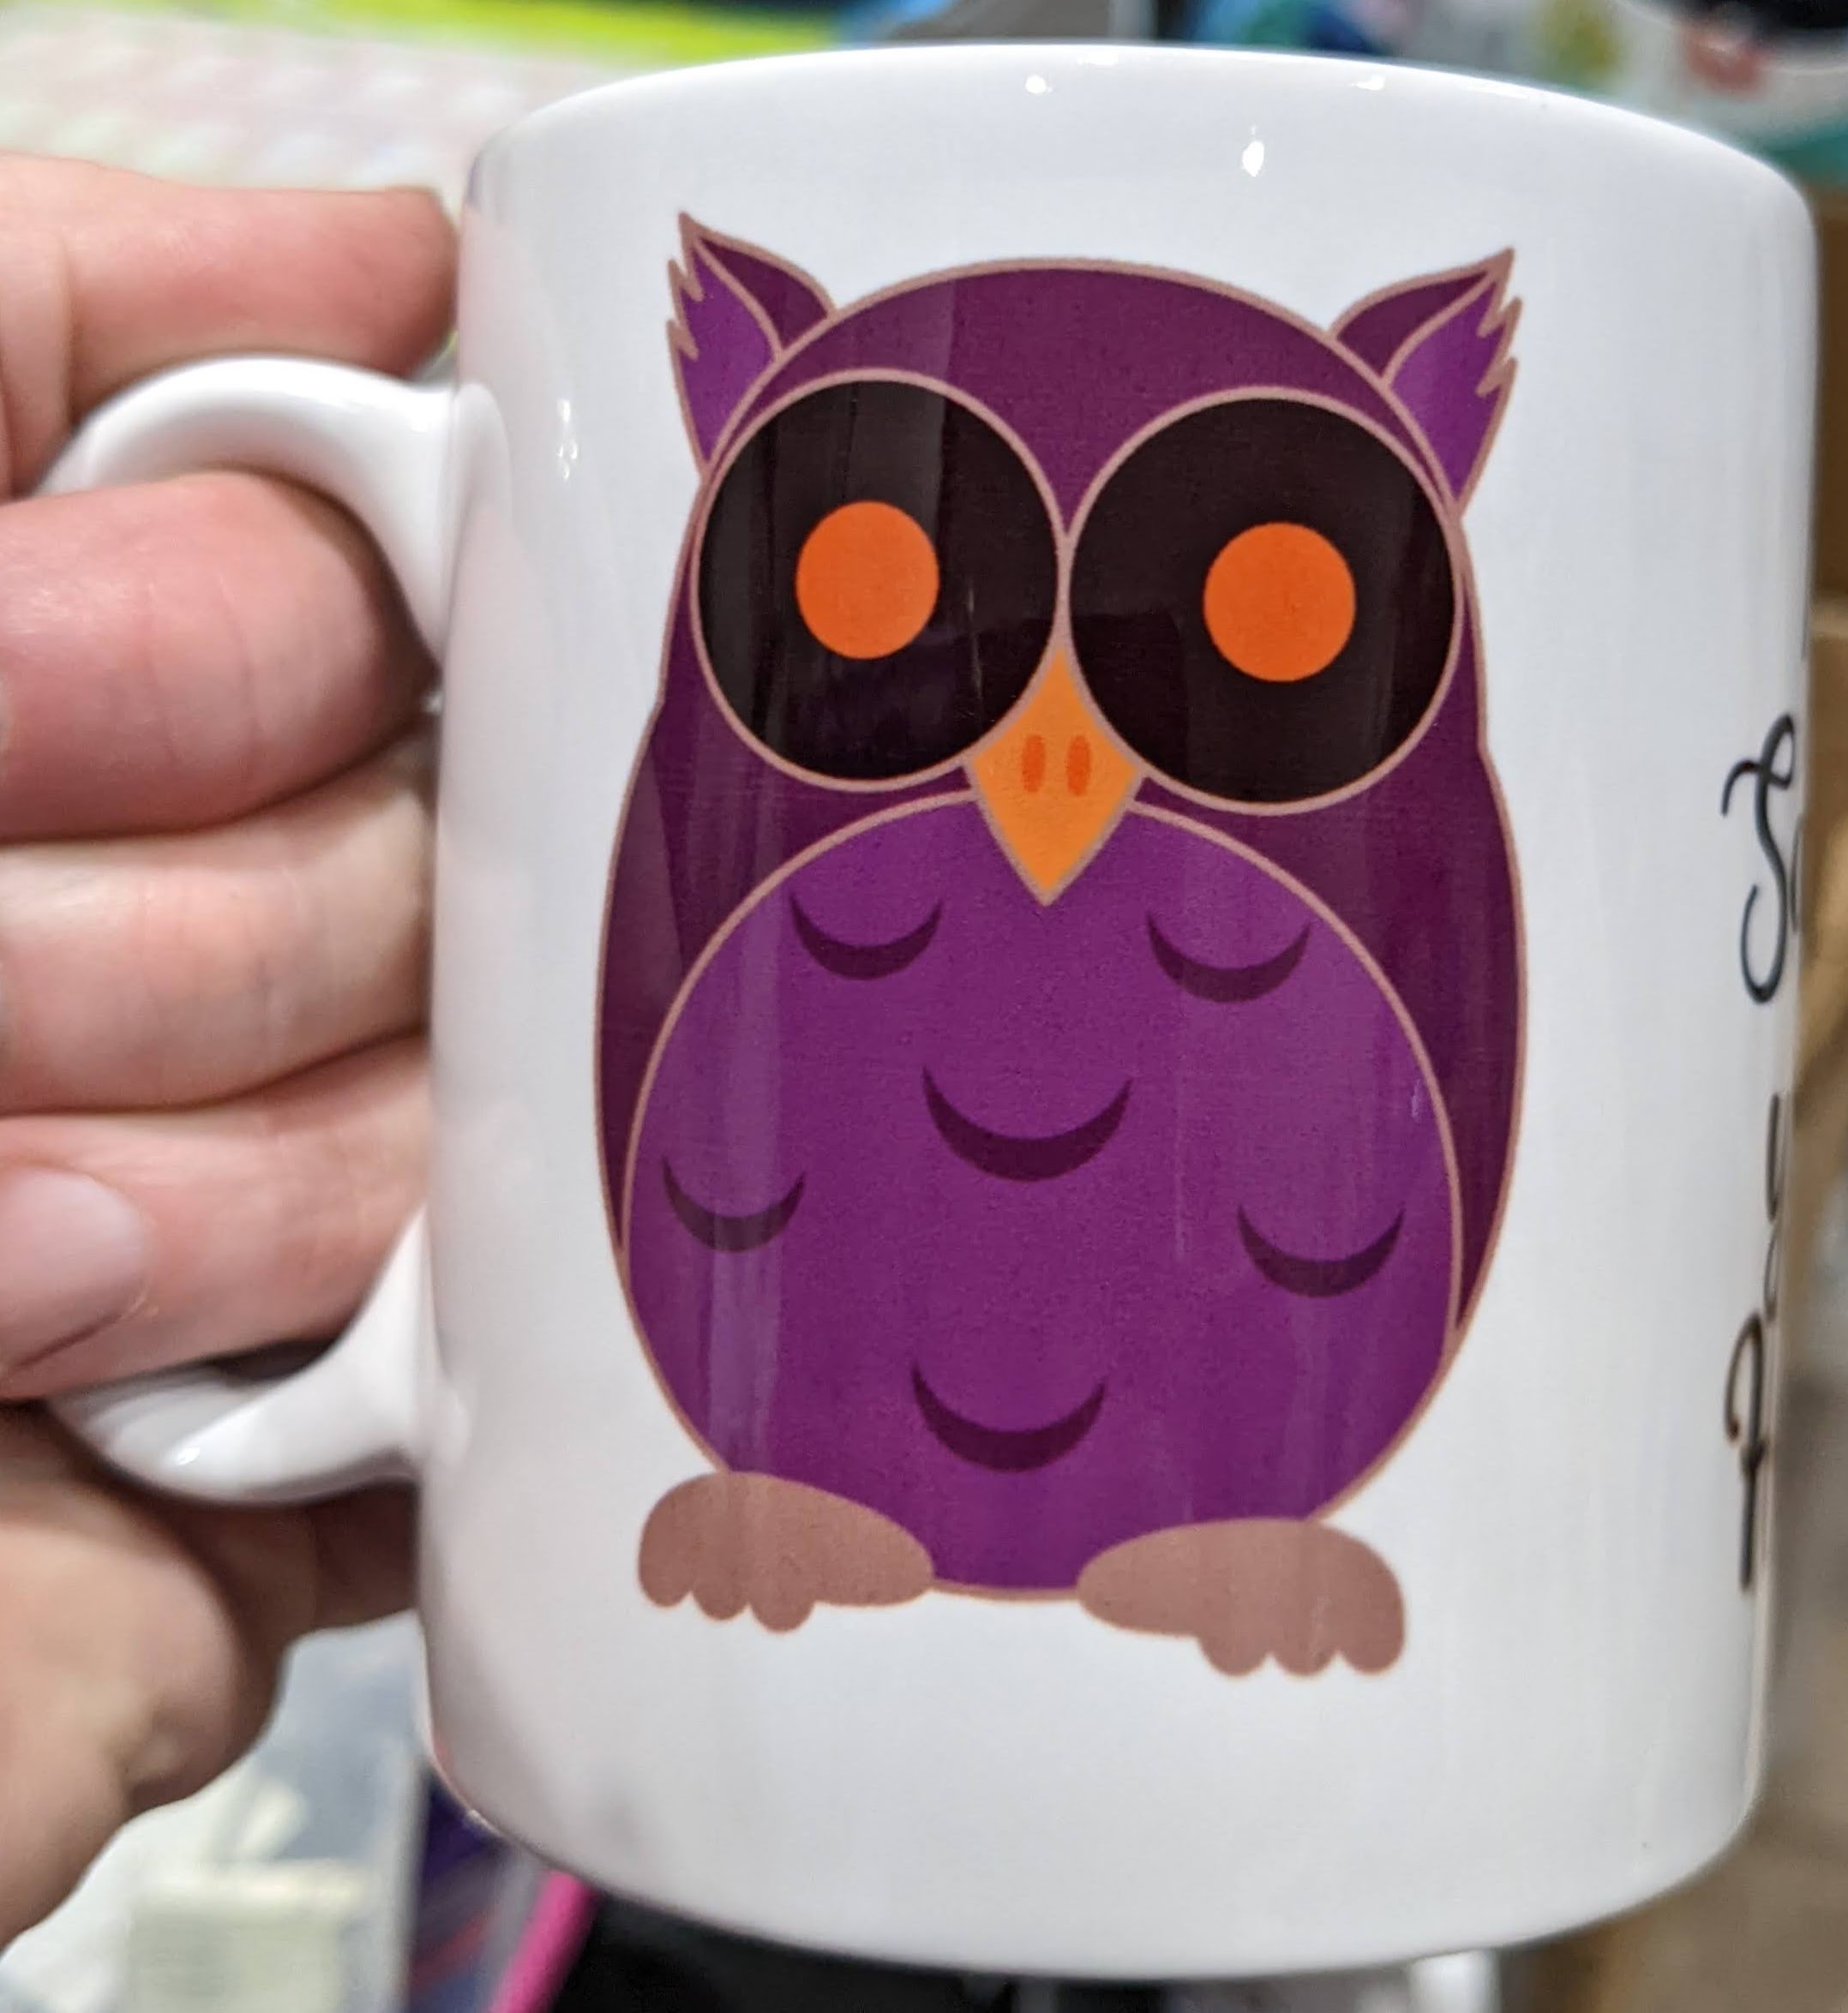 Awesome Owl CHARACTER and Matching MUG set